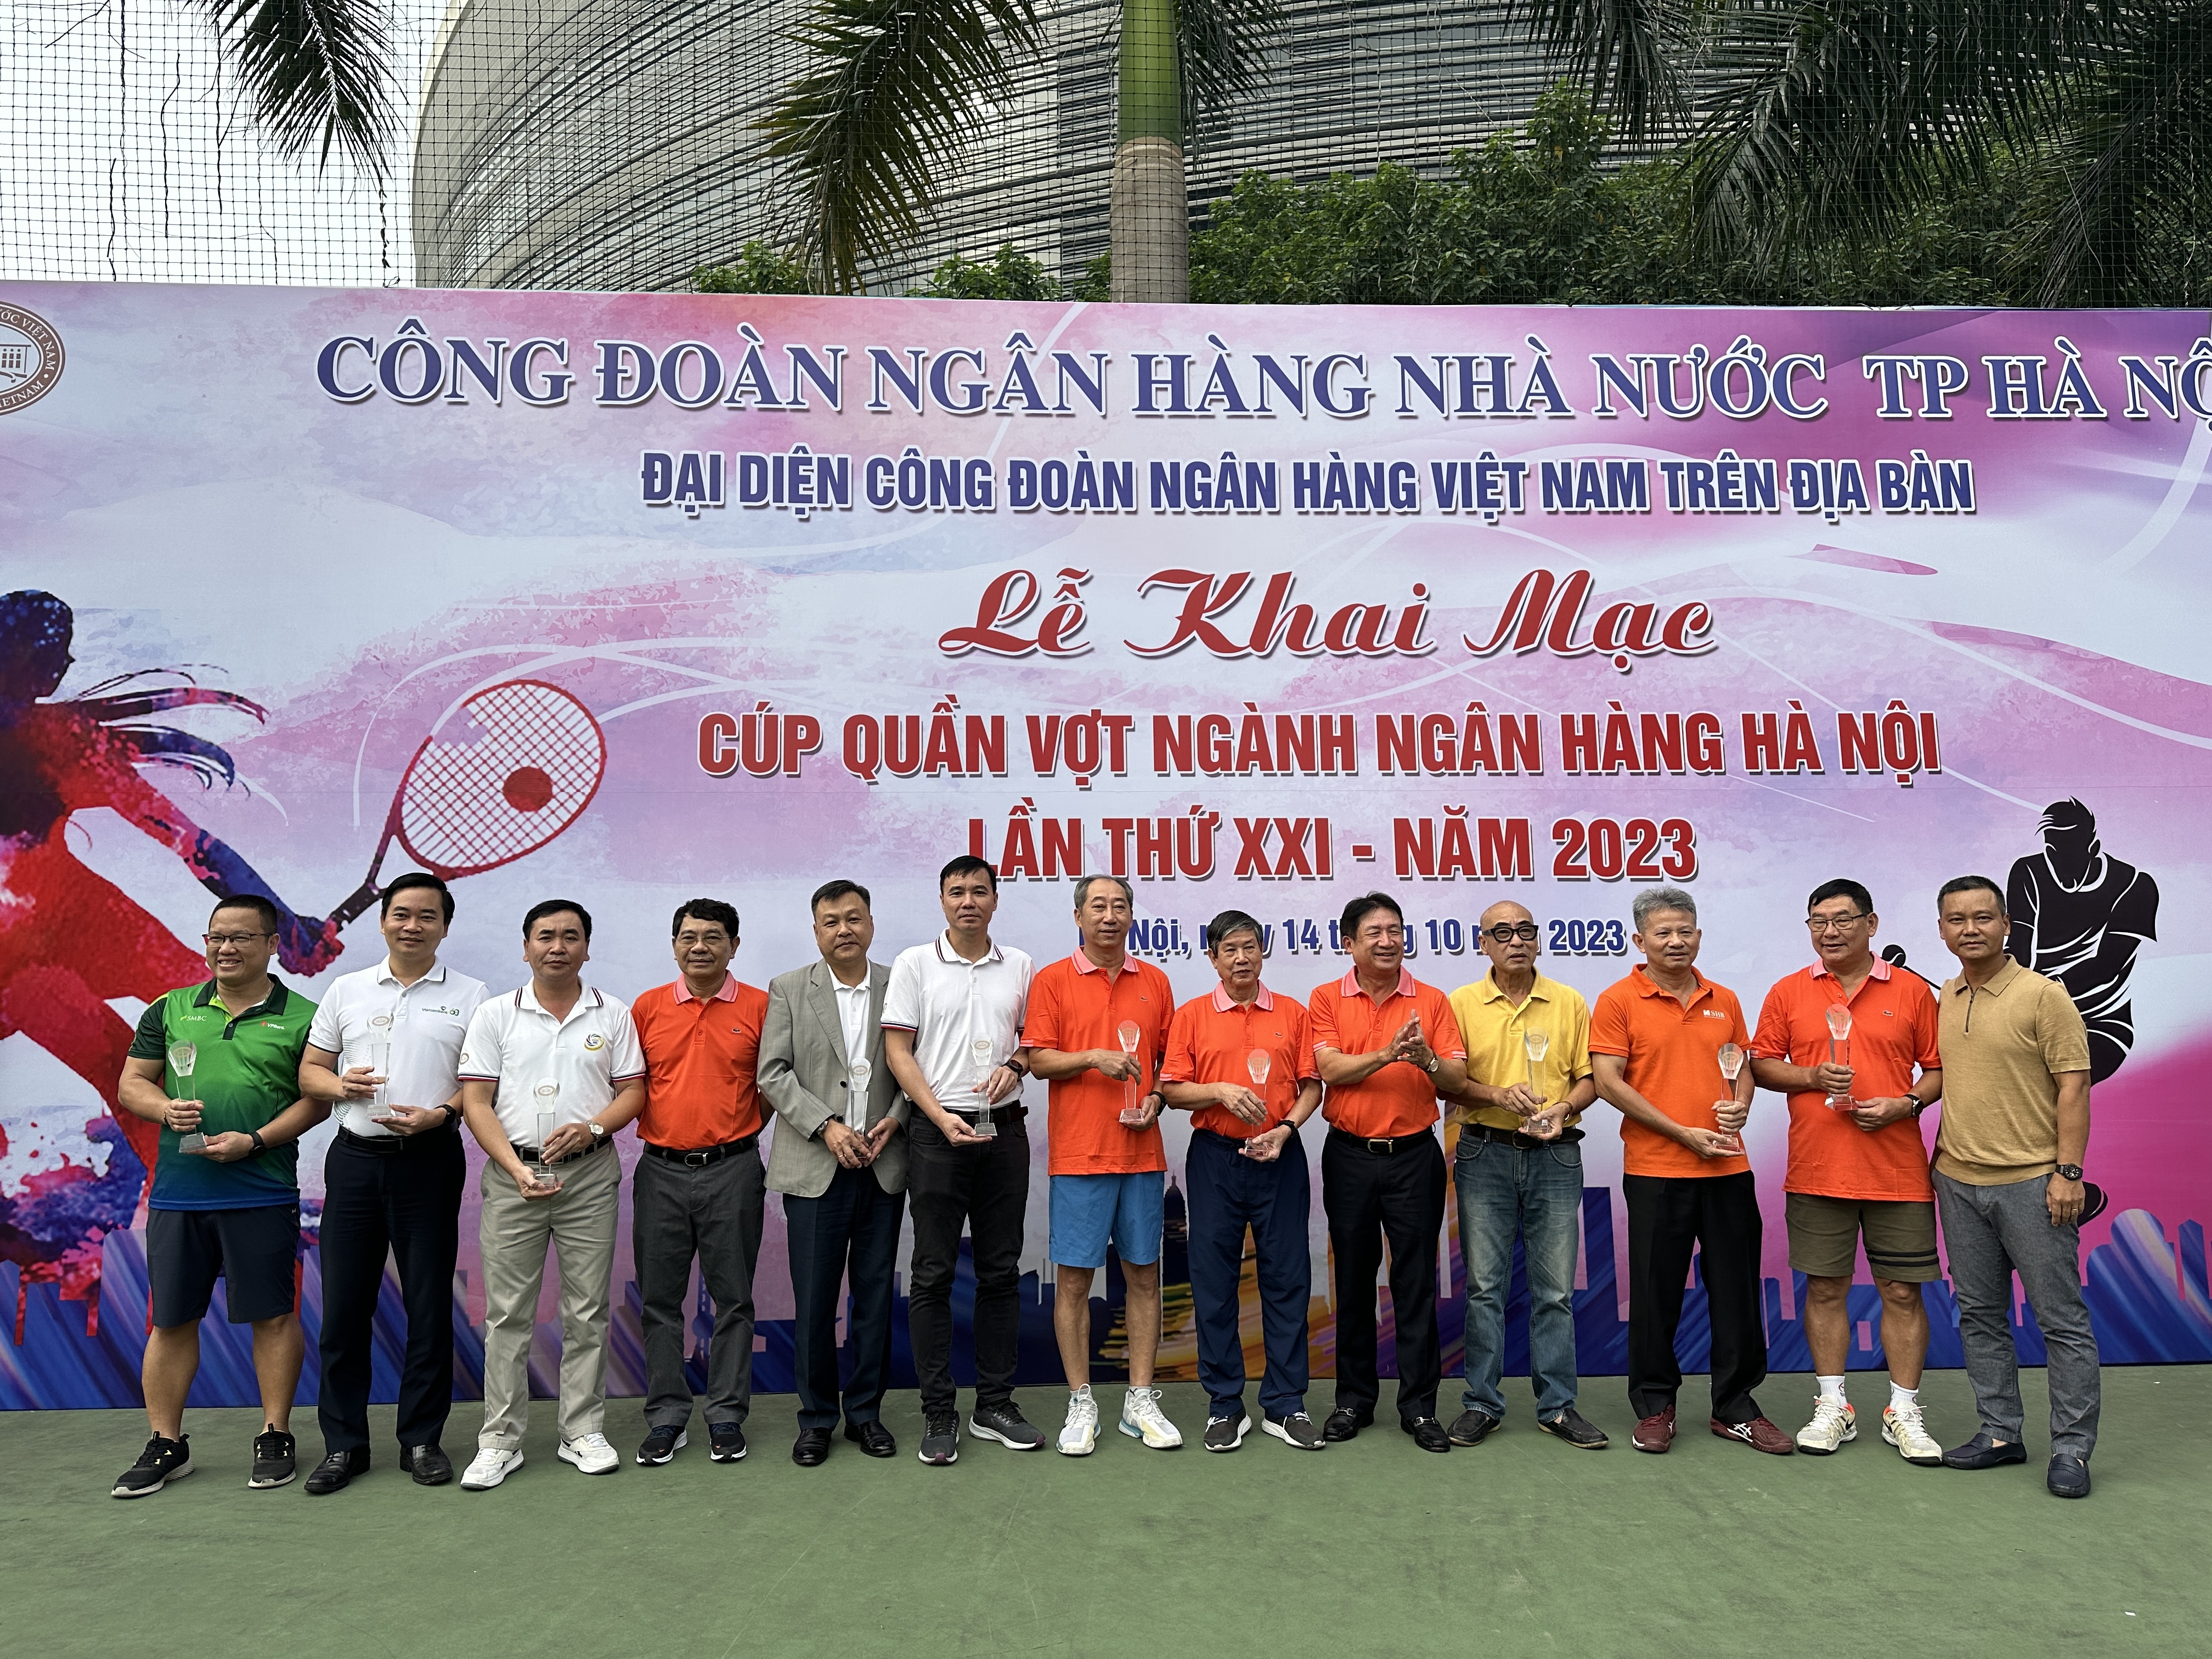 Cúp Quần vợt ngành Ngân hàng Hà Nội lần thứ XXI thành công tốt đẹp